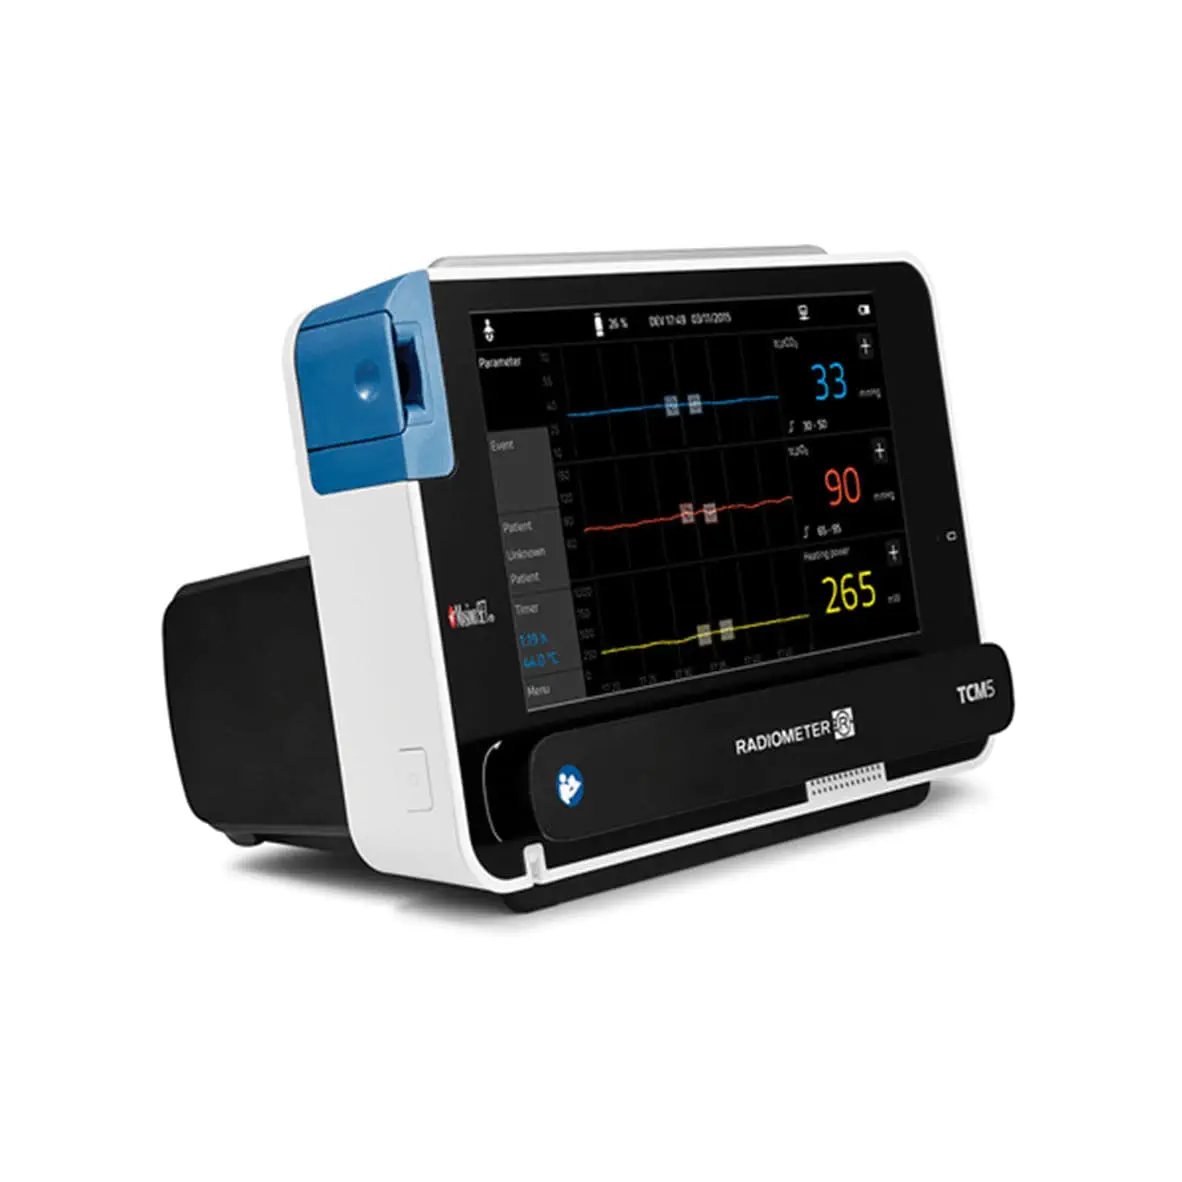 เครื่องติดตามการทำงานของหัวใจและสัญญาณชีพอัตโนมัติผ่านผิวหนัง  Transcutaneous vital signs monitor TCM5 FLEX  Radiometer